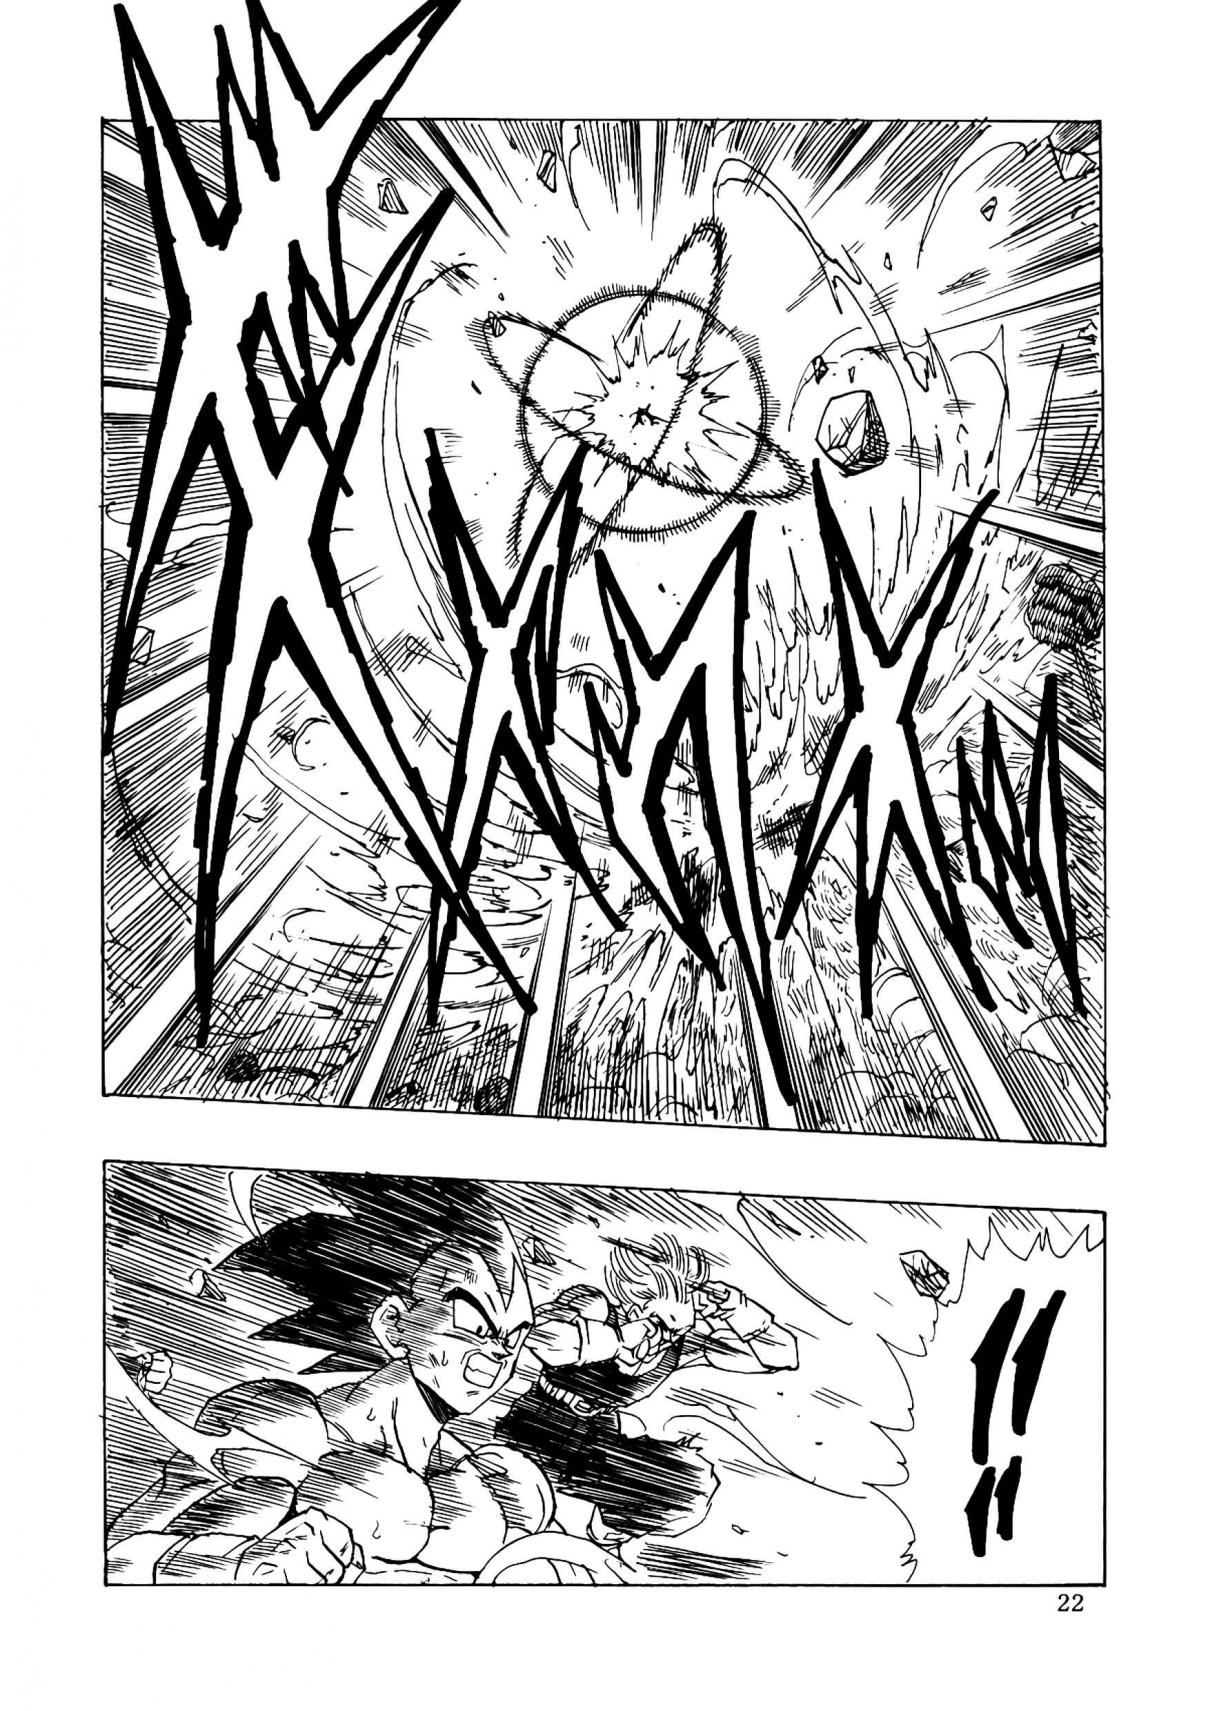 Dragon Ball AF (YOUNG JIJII) (Doujinshi) Ch. 16 Gather the Saiyan Power